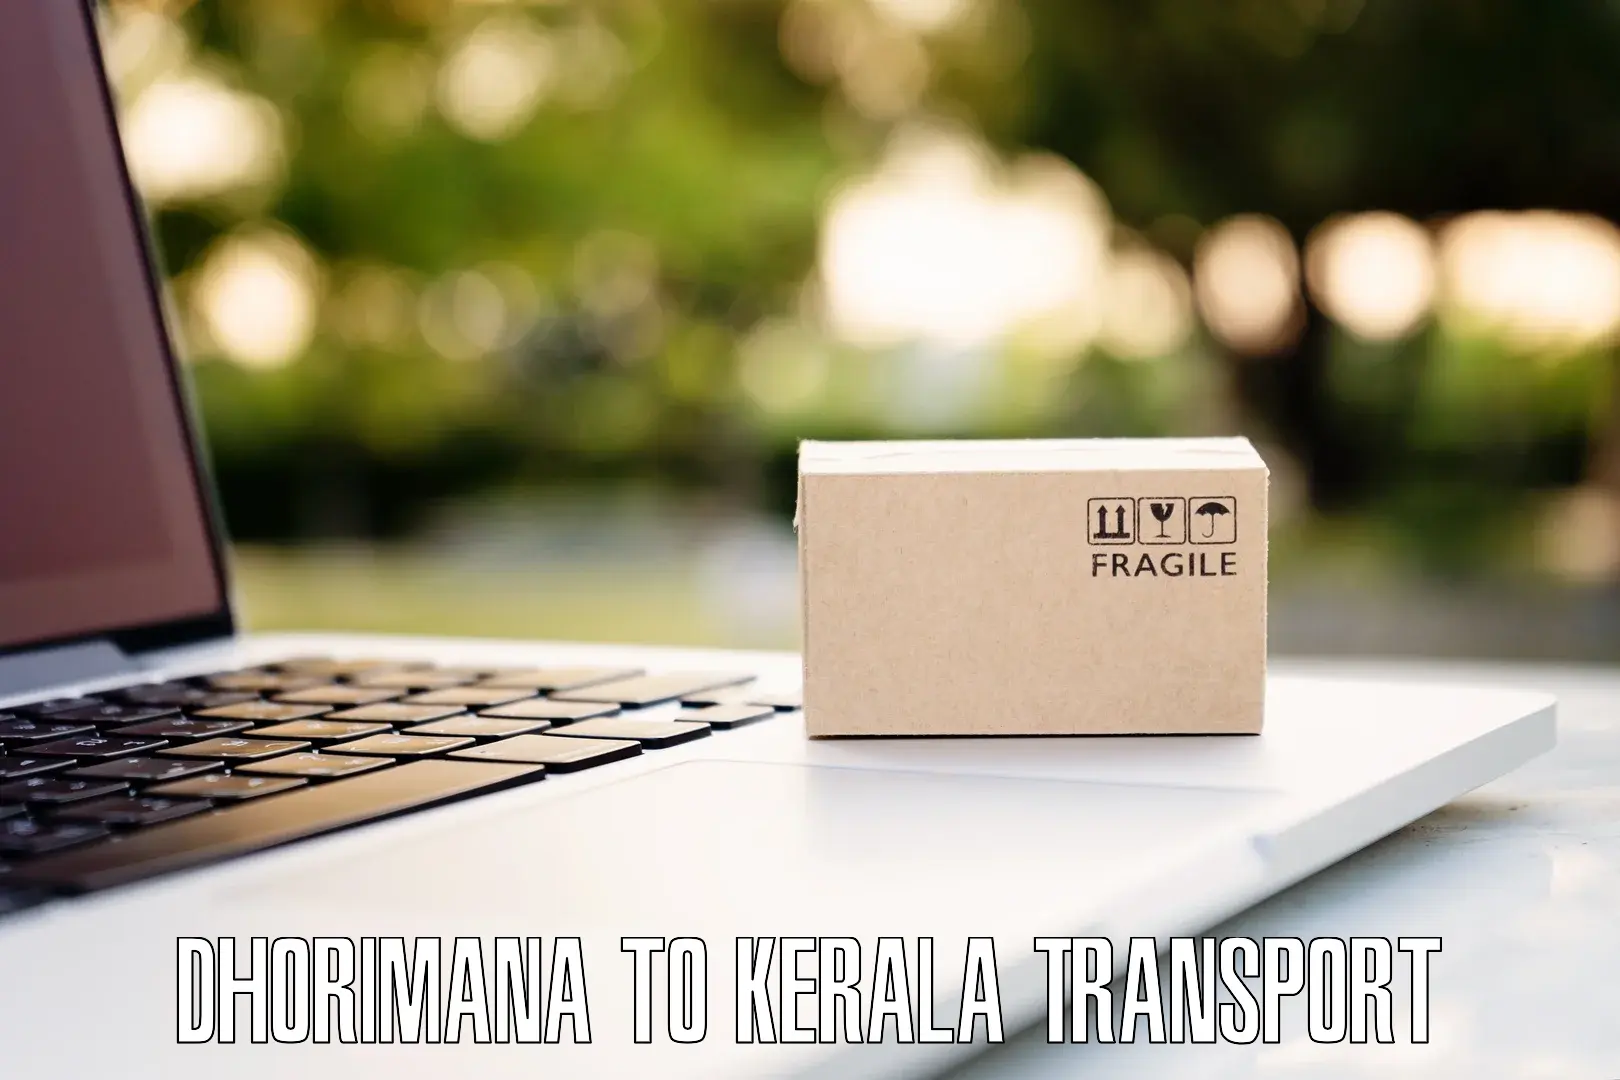 Land transport services Dhorimana to Kiliyanthara